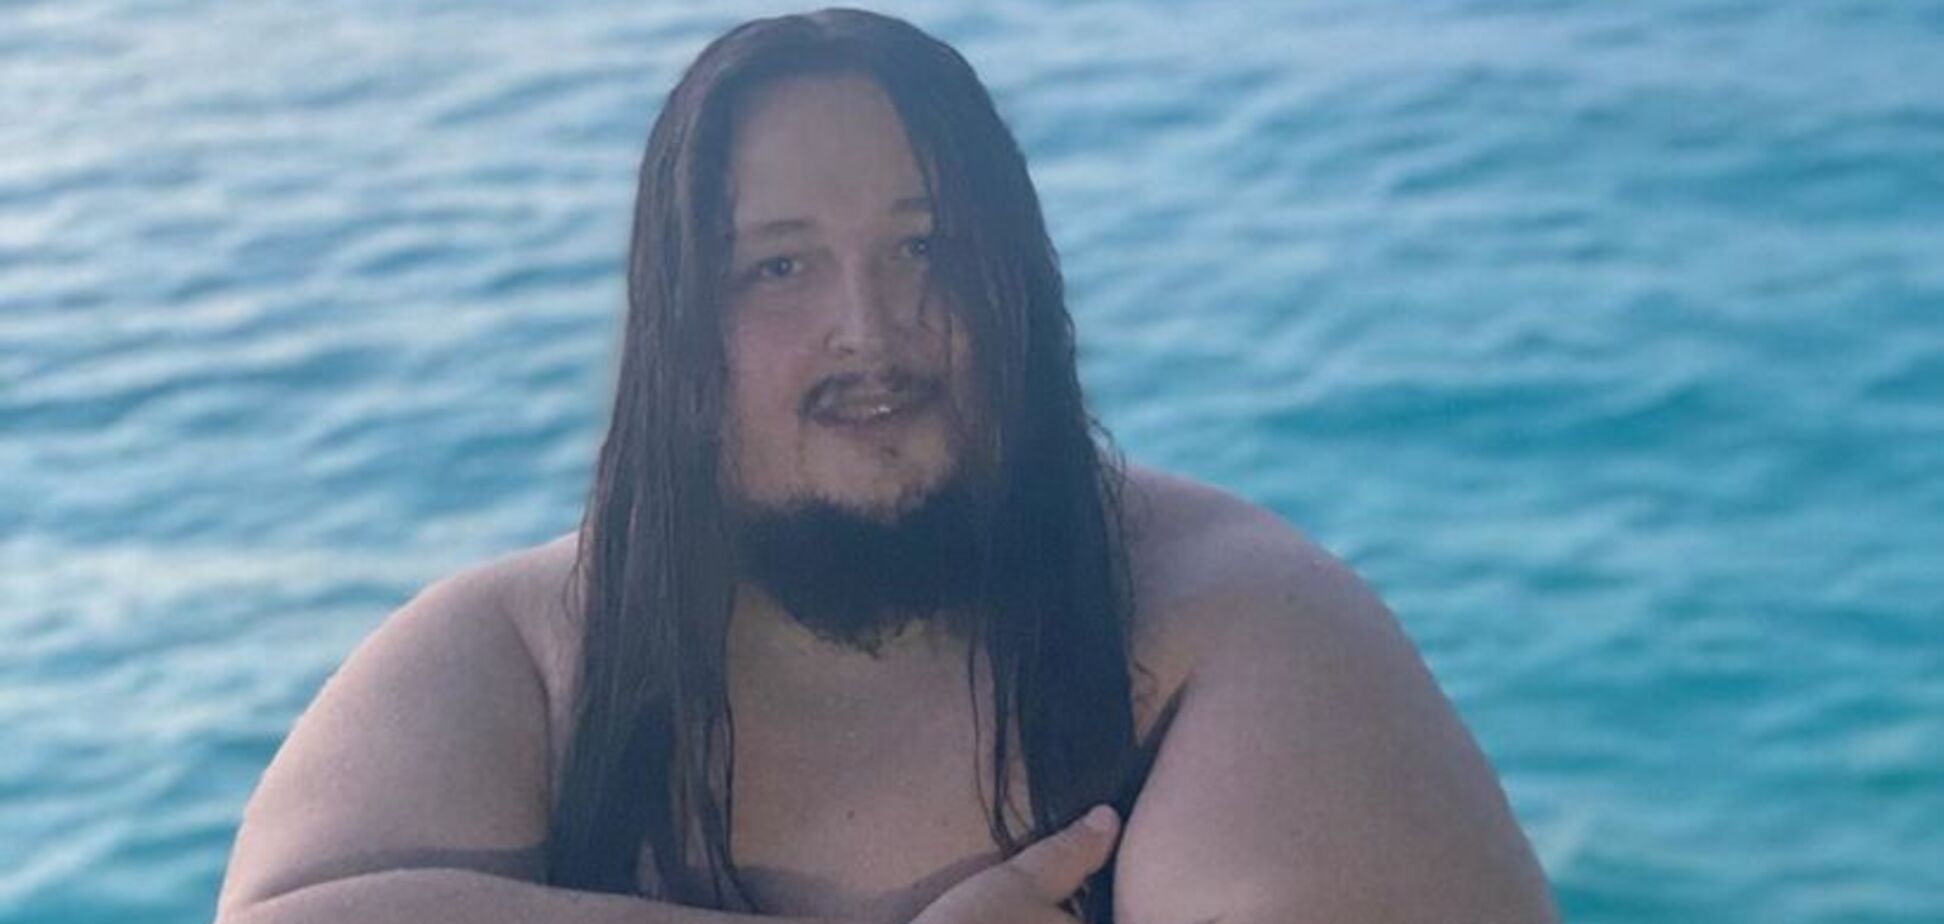 Мокрый, с голым торсом: 240-килограммовый сын известного в РФ художника показал провокационные фото